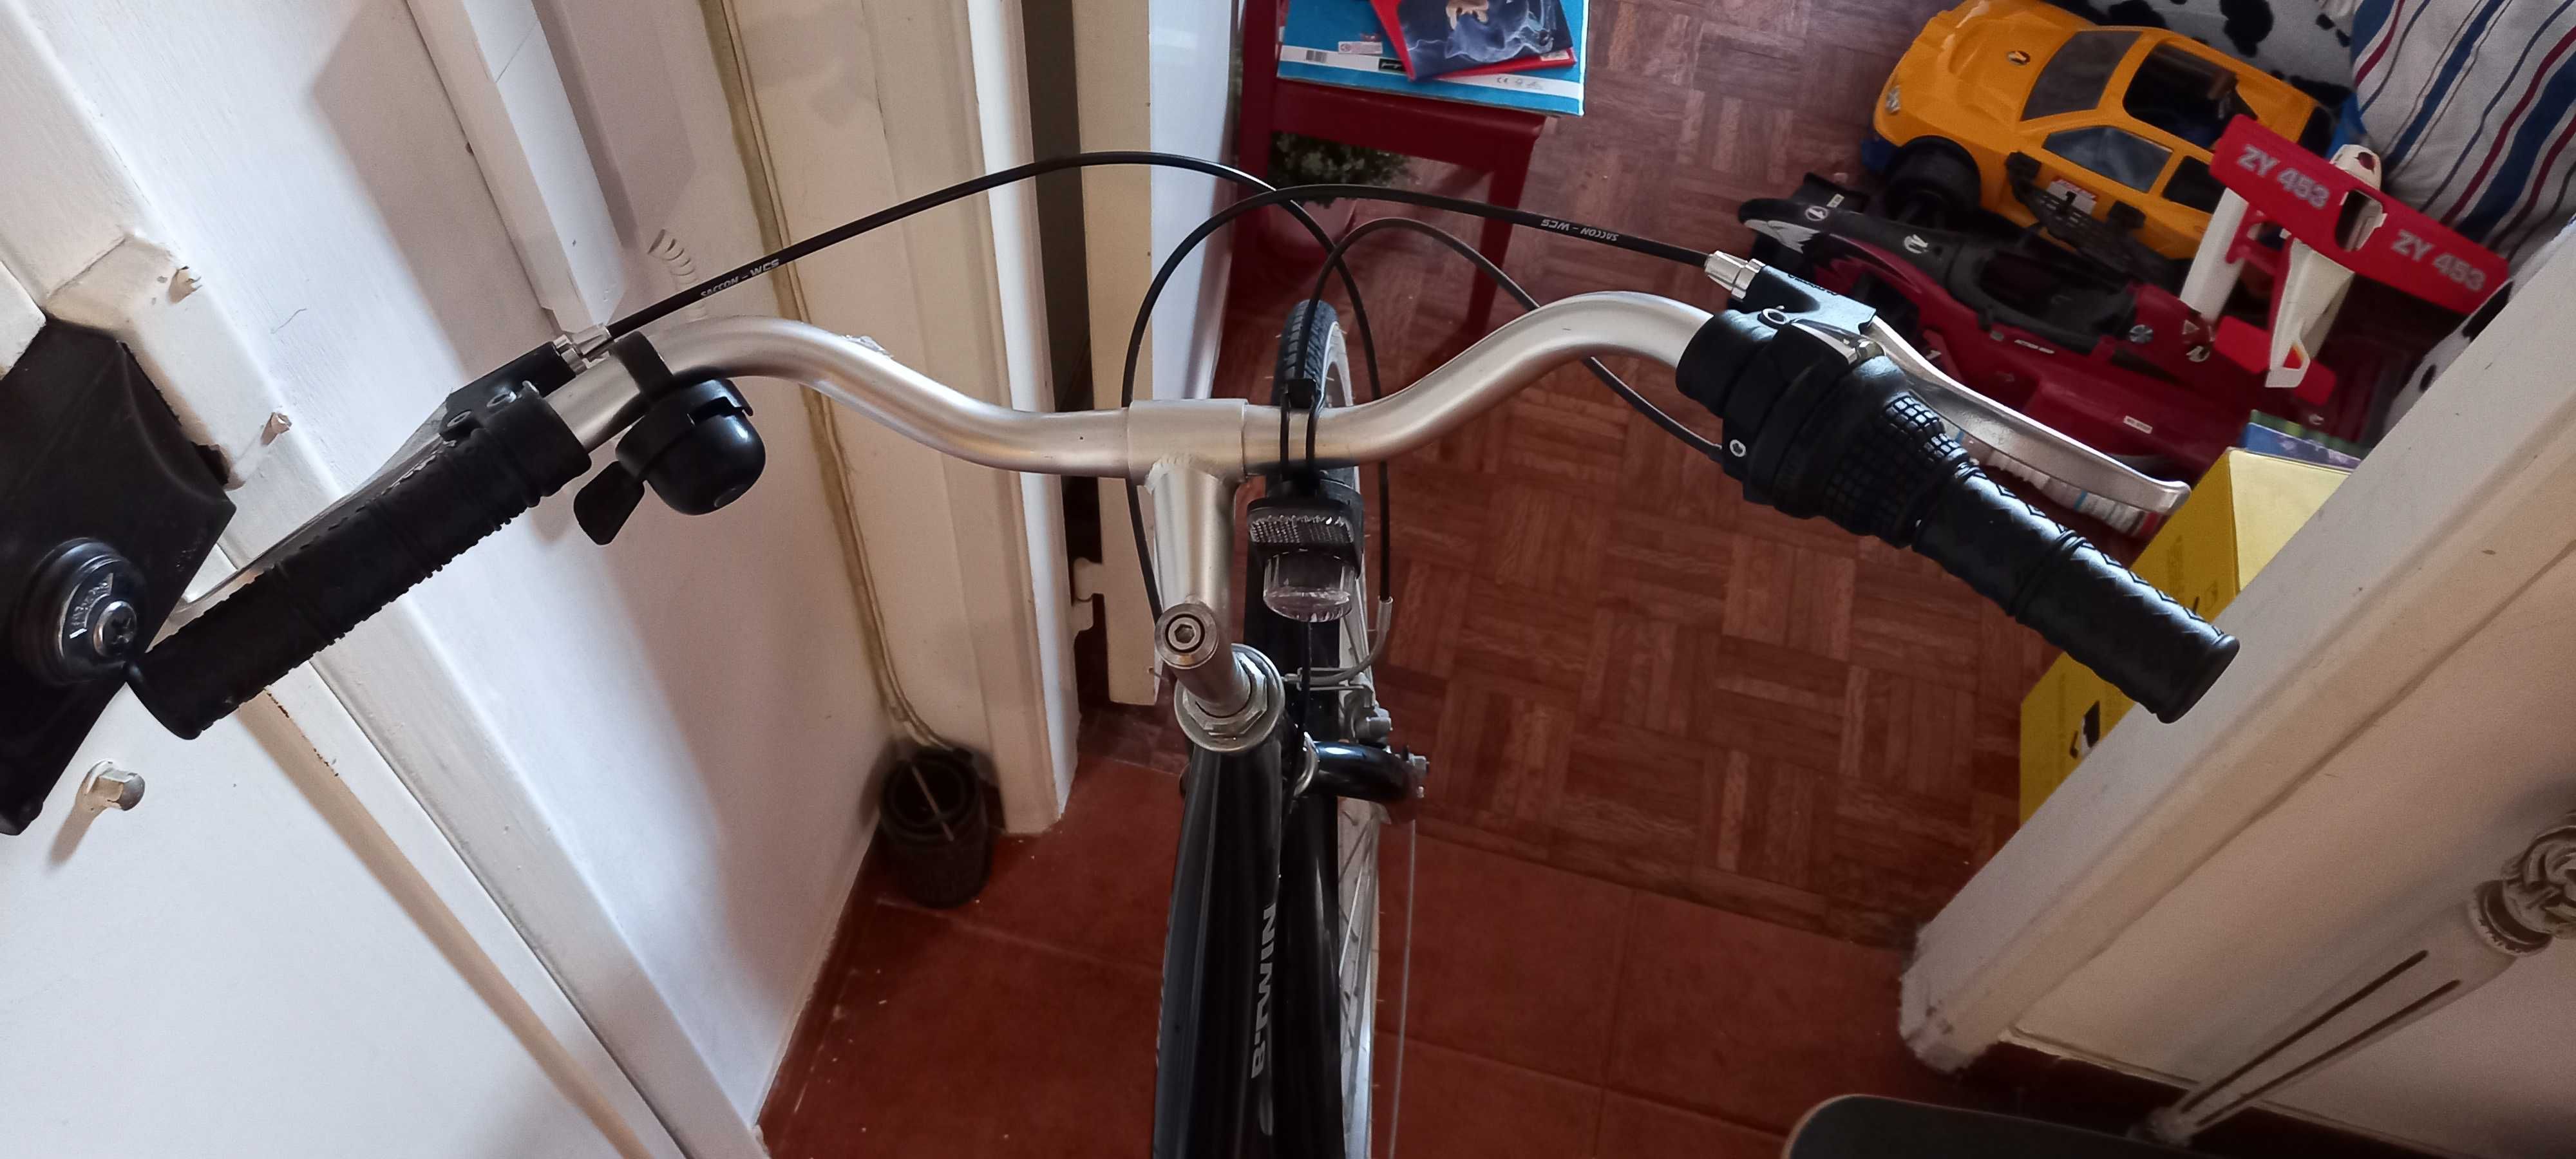 Bicicleta Elops-Btwin - Preta